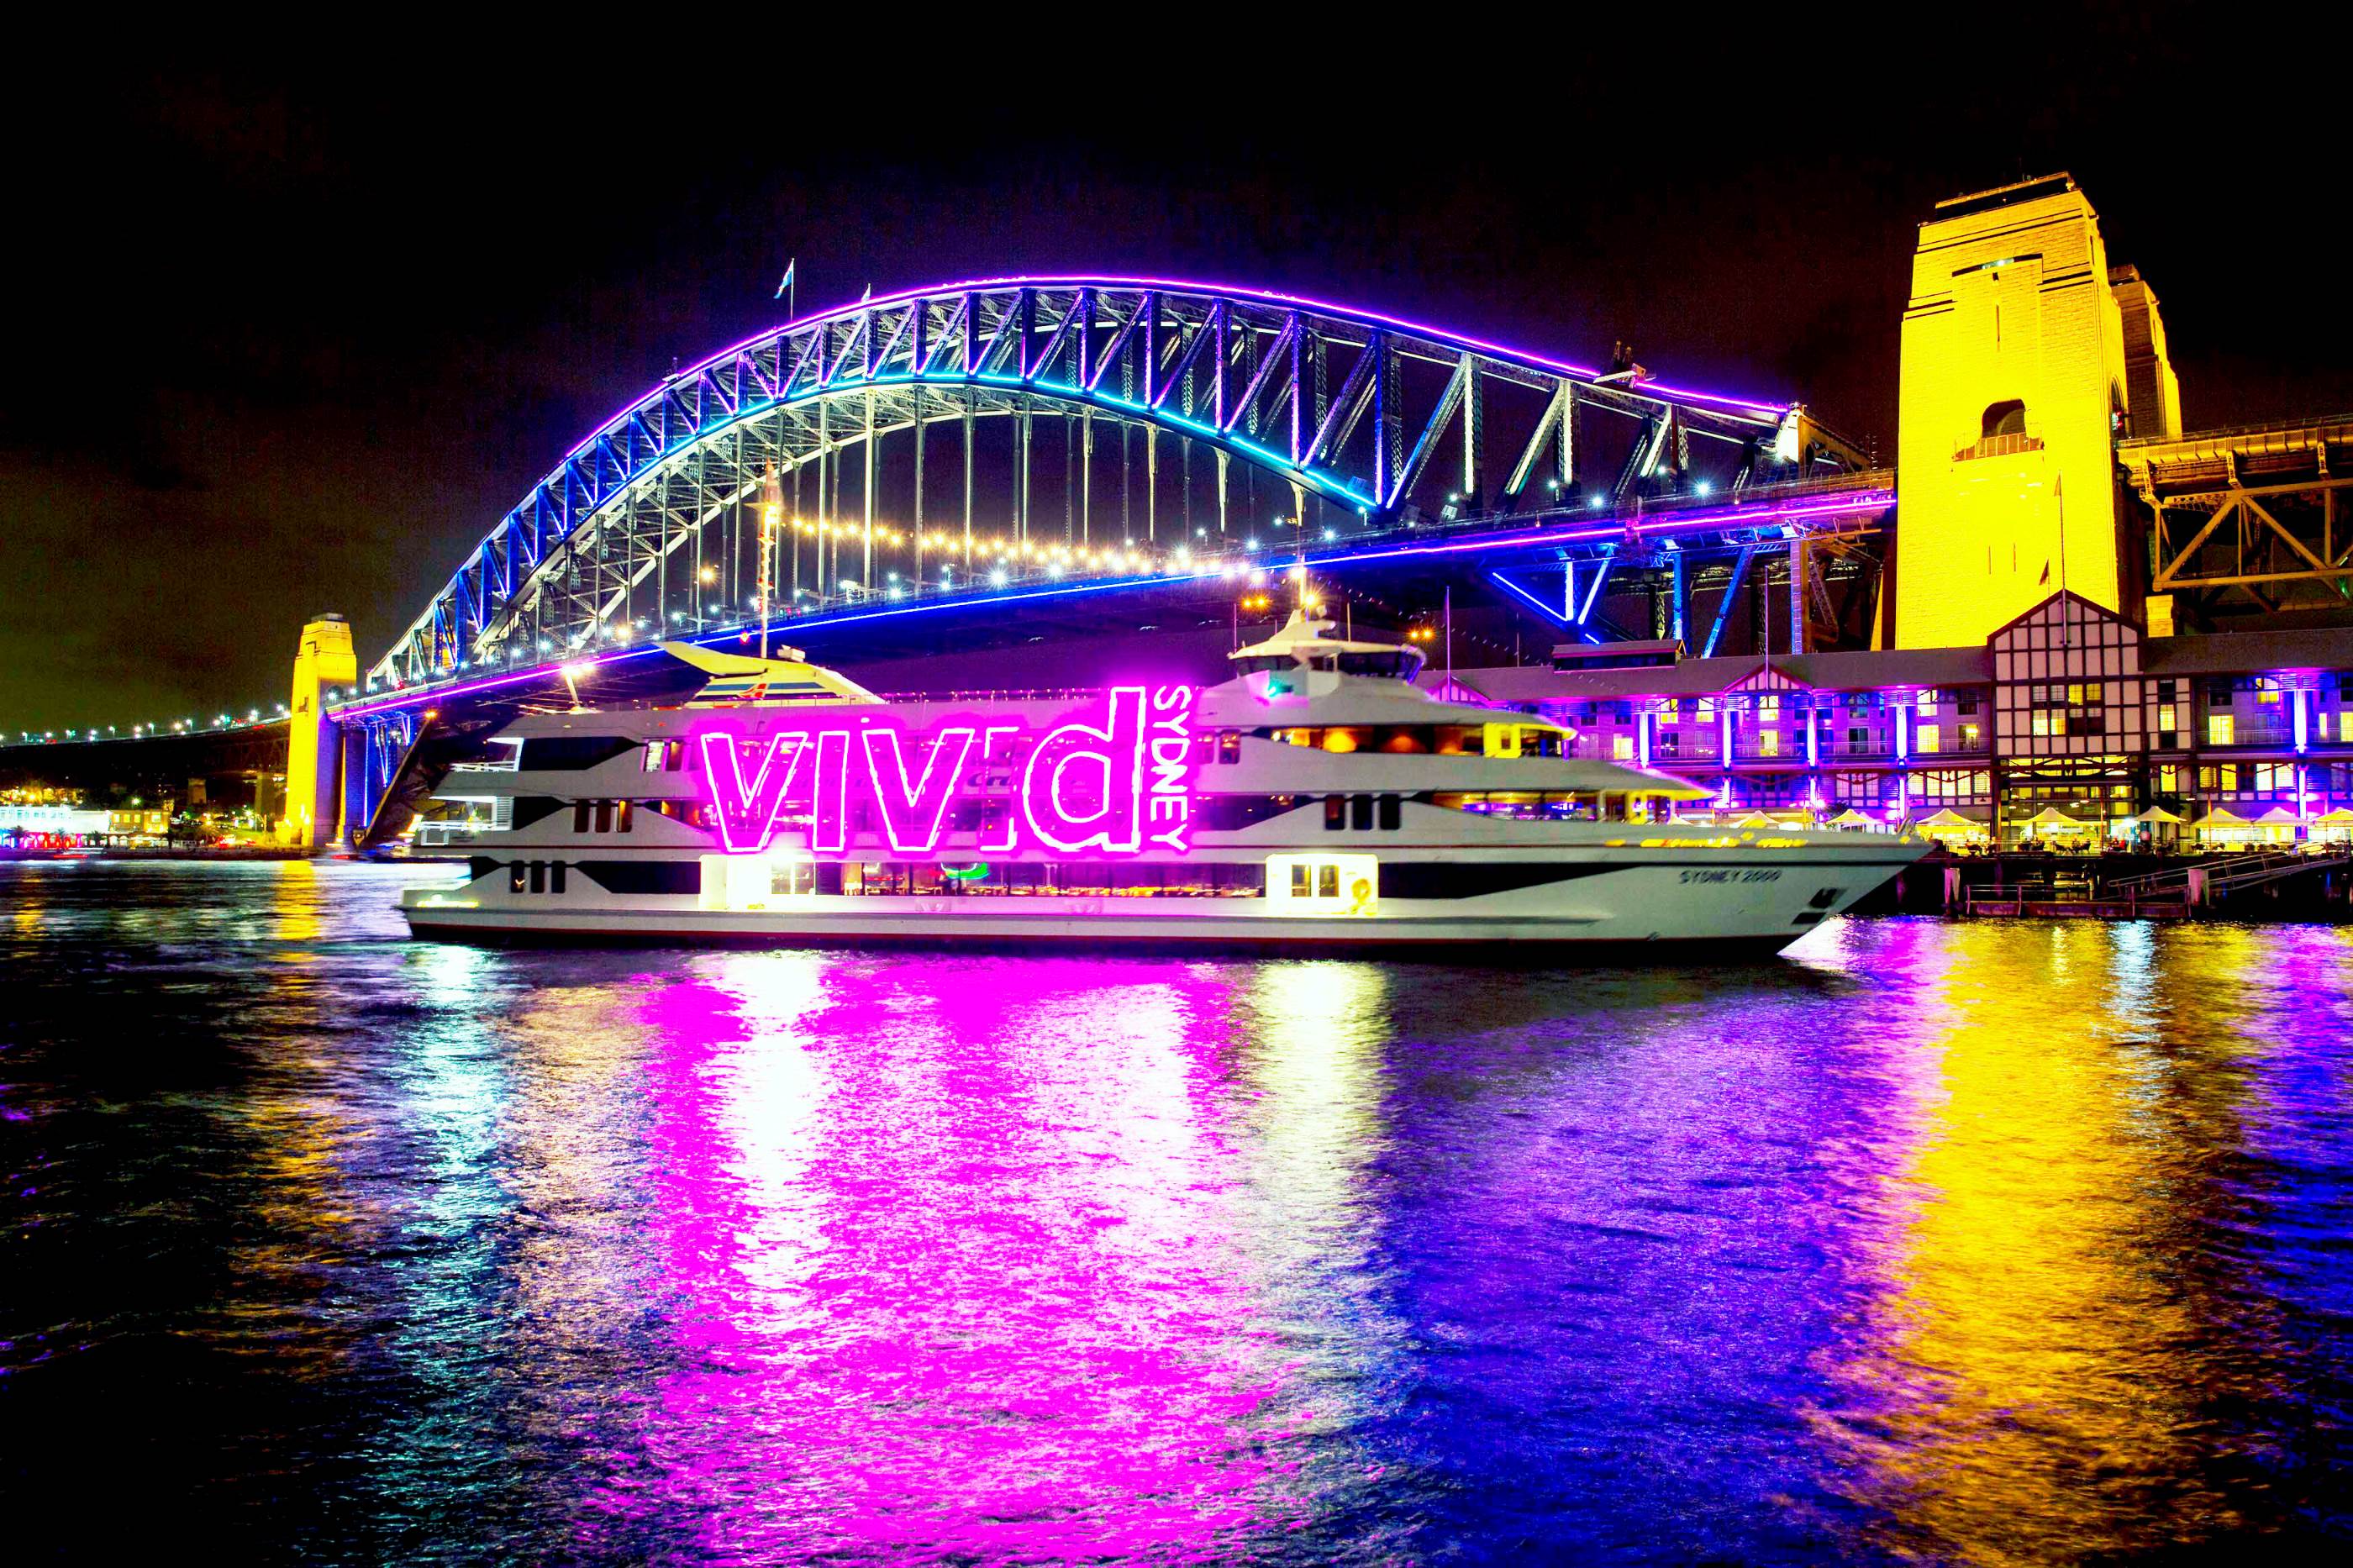 【观景】Vivid Sydney悉尼海港观景1小时游船观光